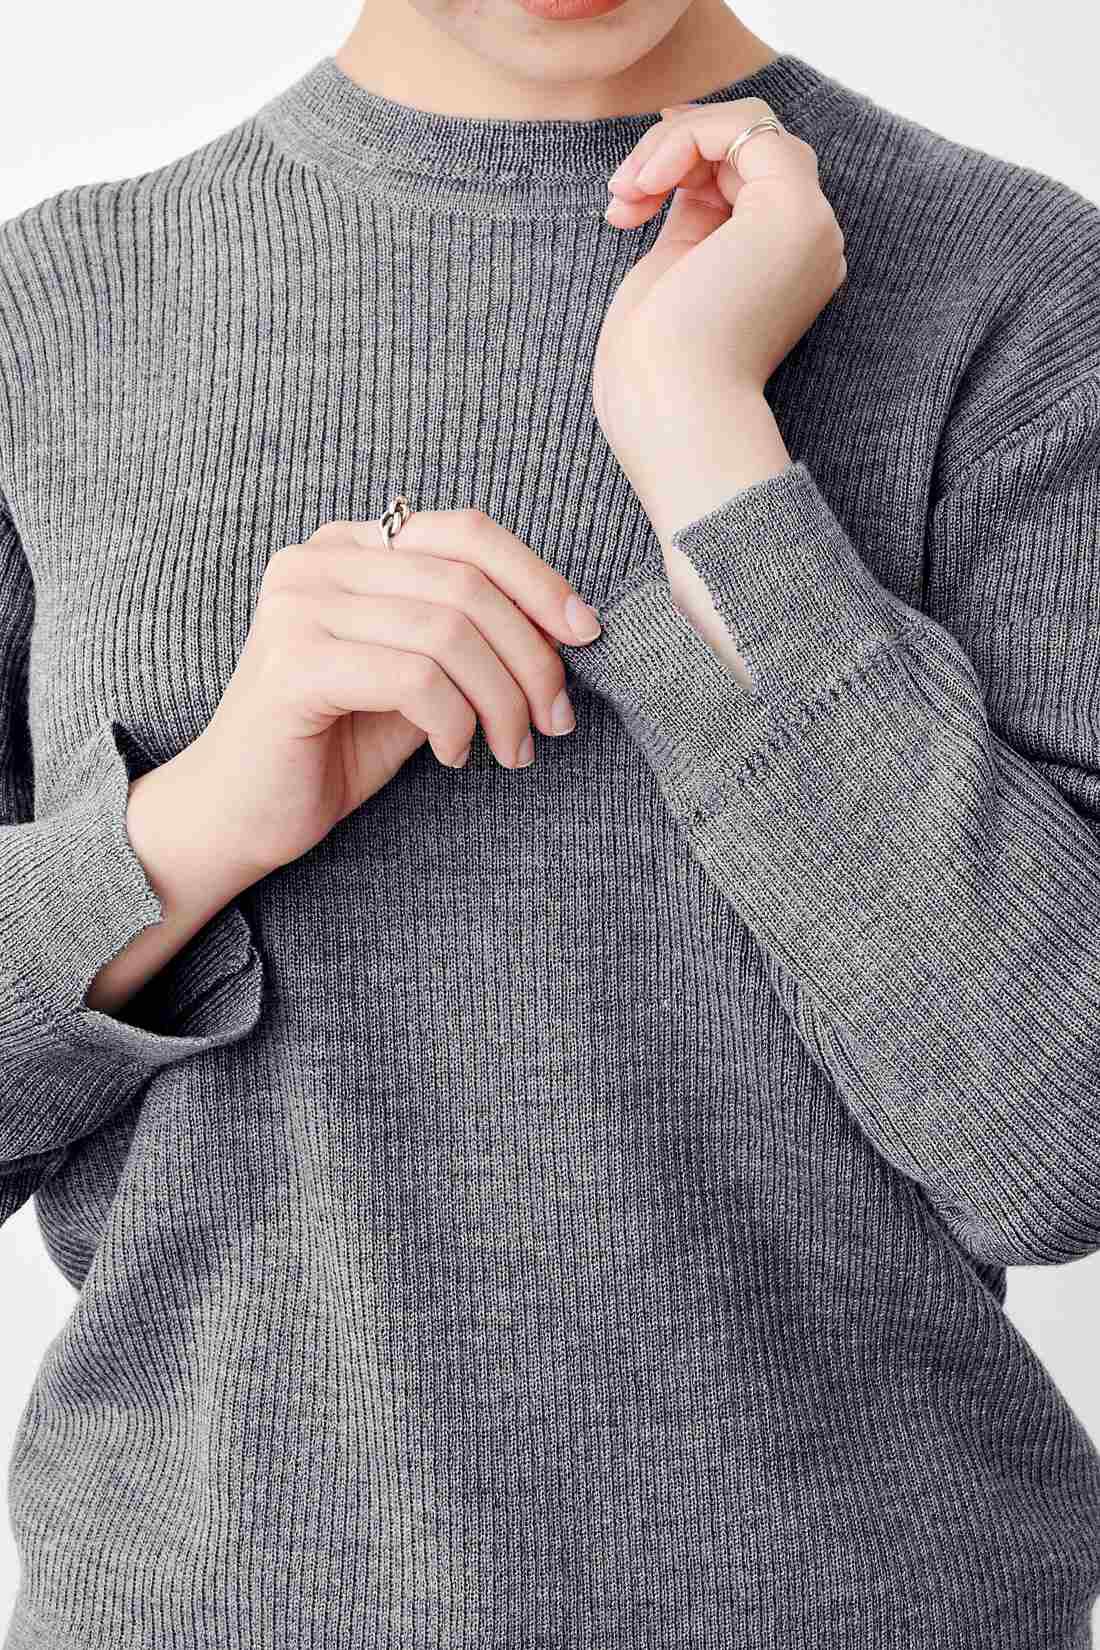 MEDE19F|【高山都さんコラボ】MEDE19F　マイベーシックニットプルオーバー〈グレー〉|衿や袖のリブにはガーター編みをプラスしてアクセントに。プルオーバーの袖口にはスリット入り。